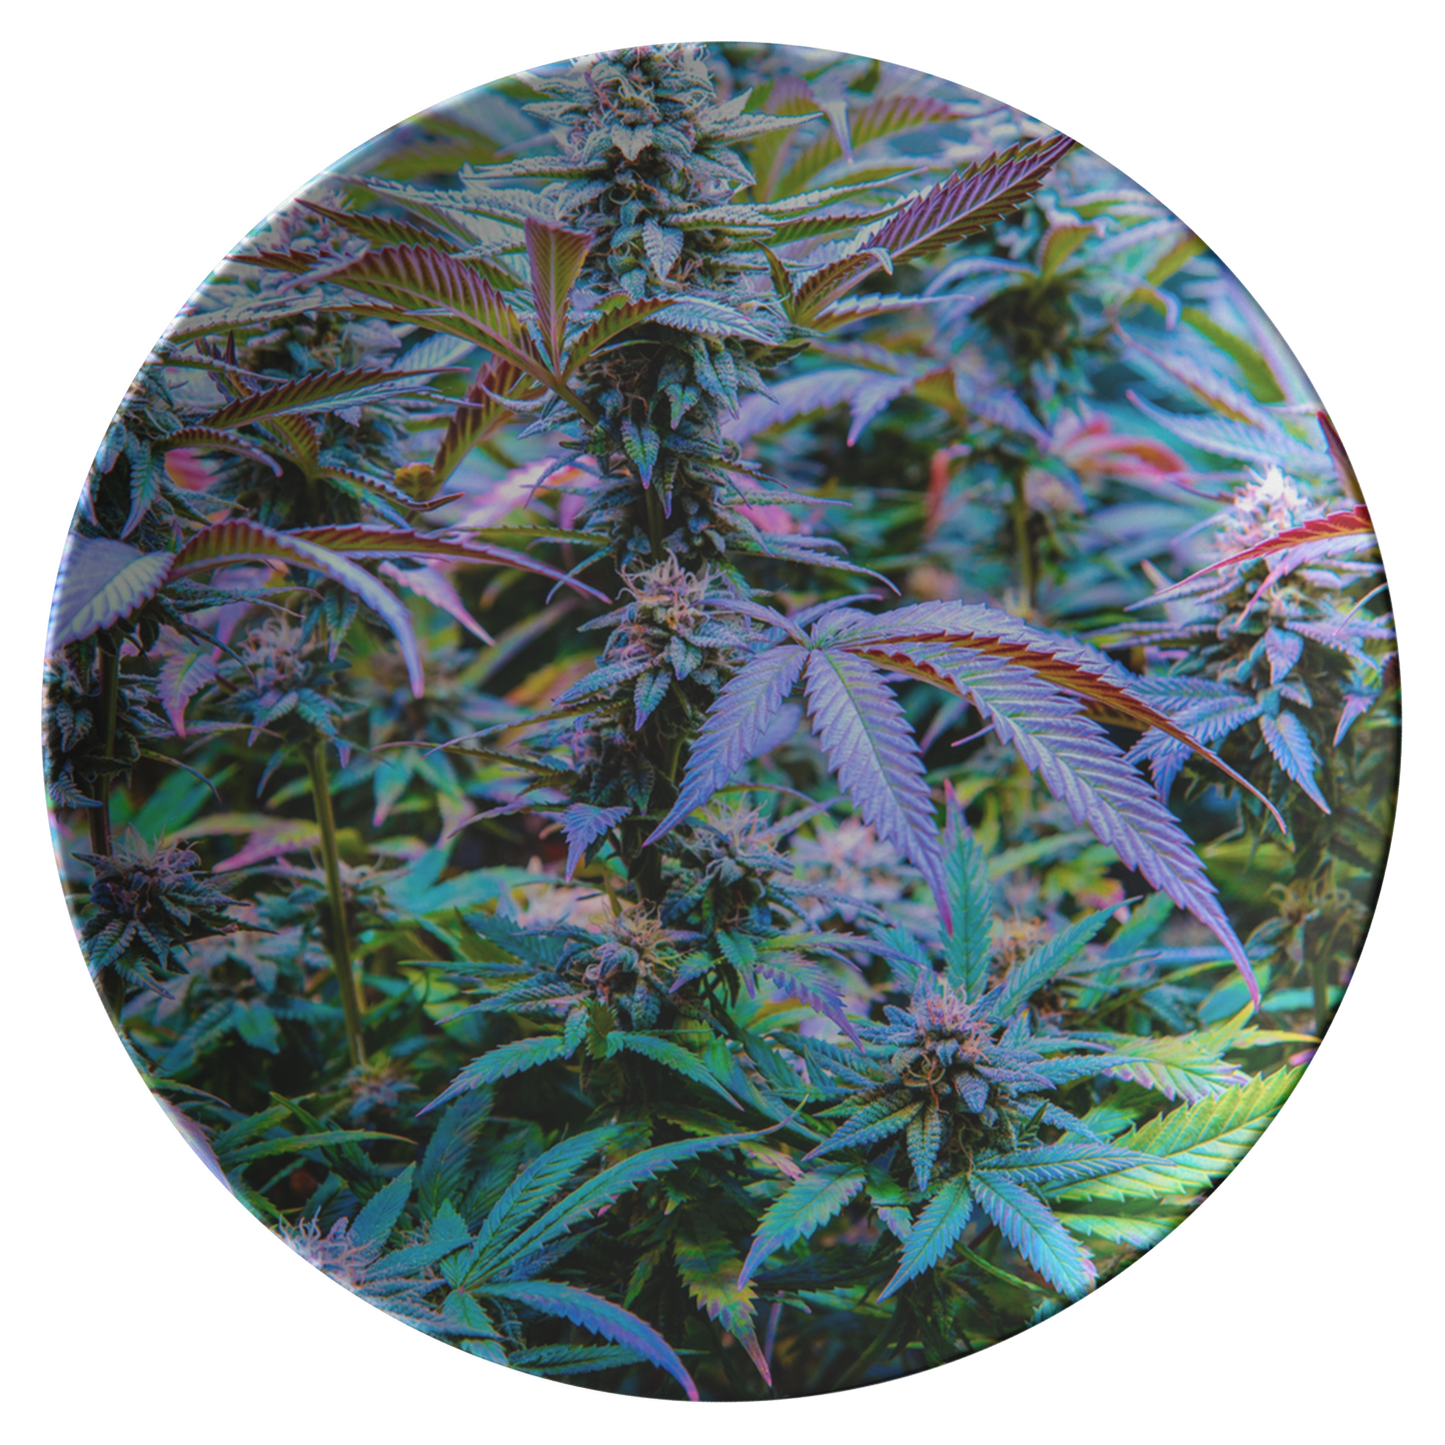 The Rainbow Cannabis Plate